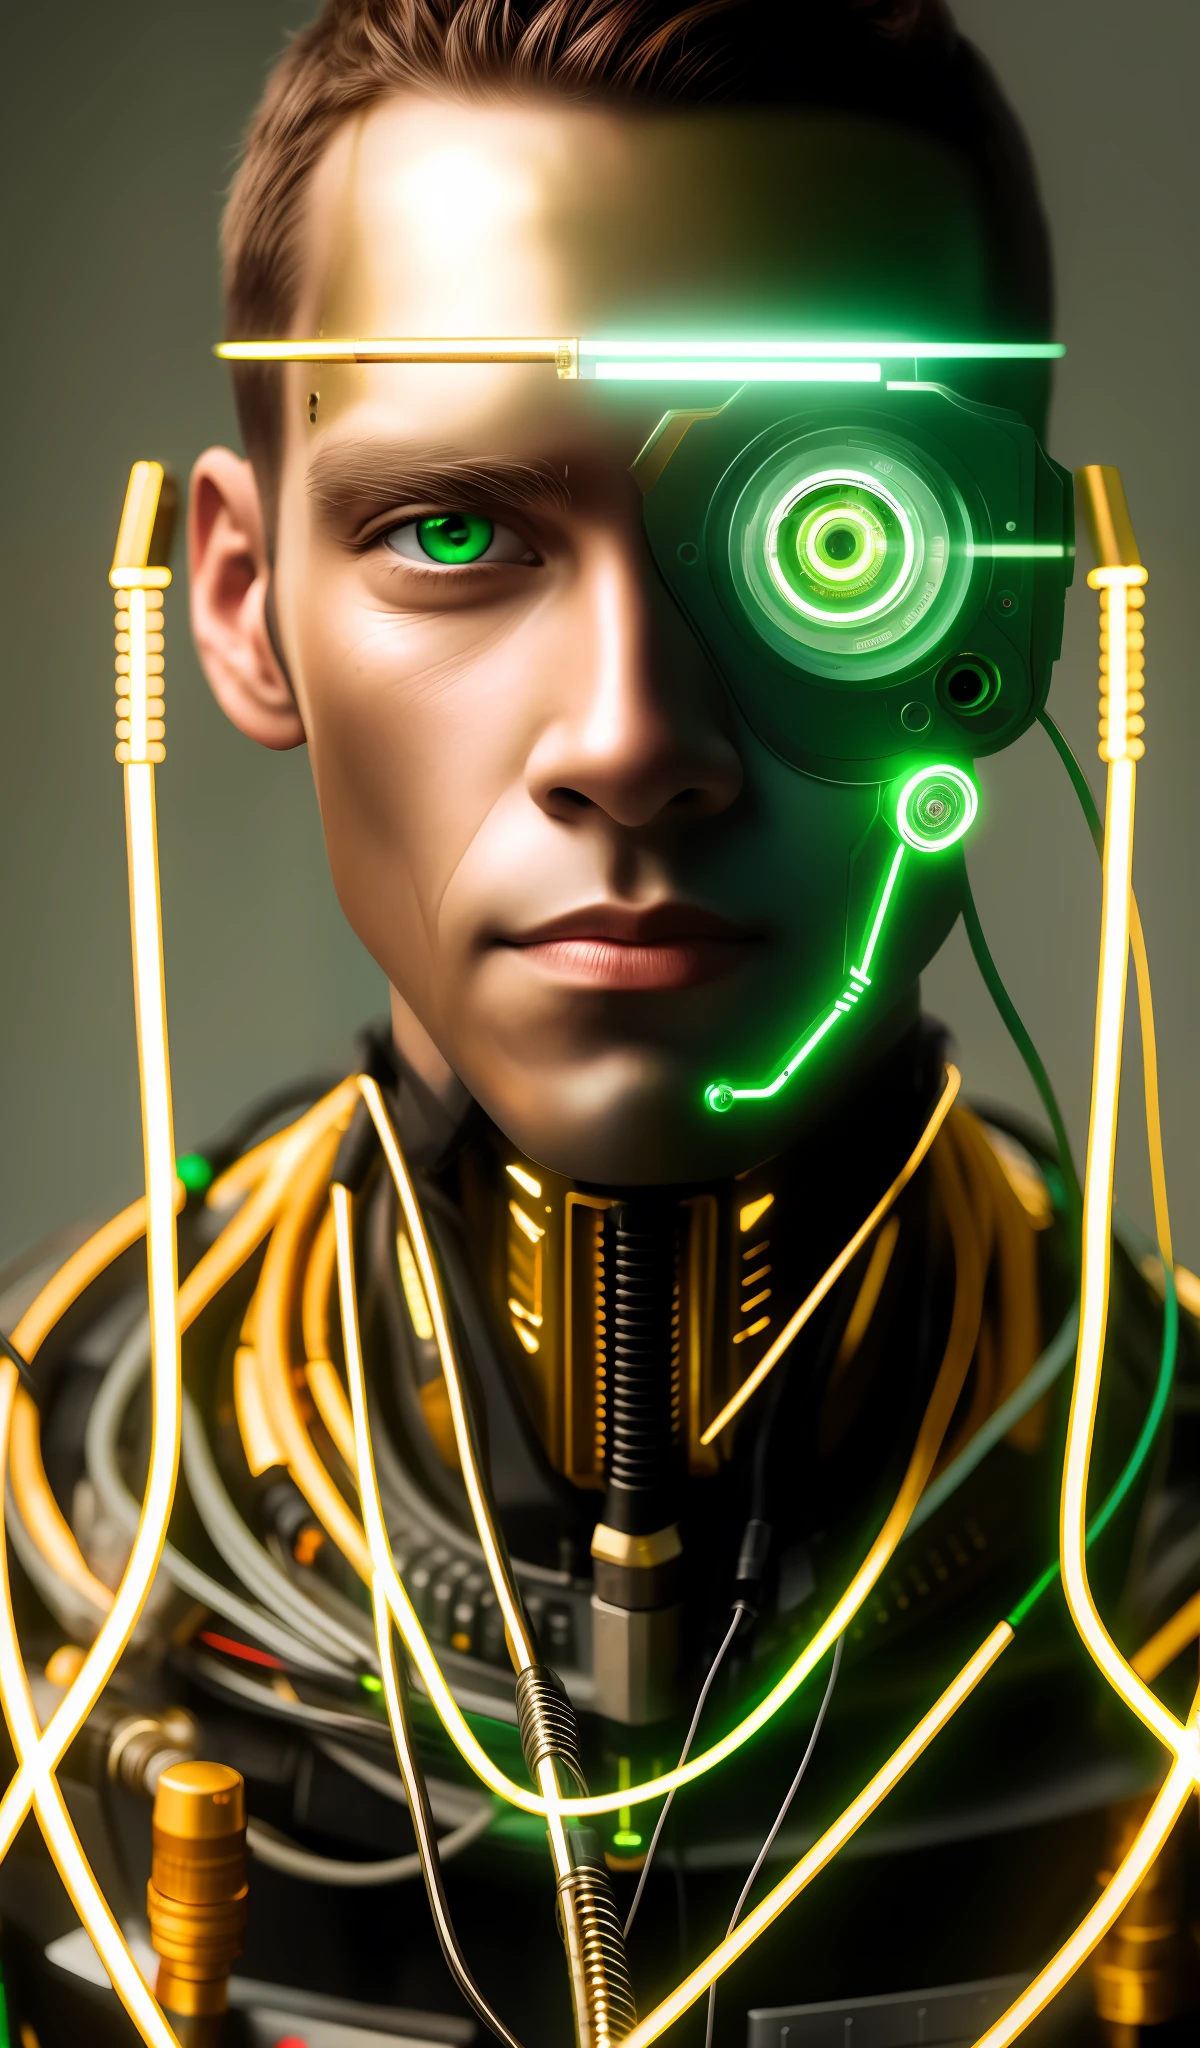 Человек-киборг, средний план, зеленые глаза, комбинезон, модельное лицо, Открытые провода, Золотая нефть, вырывающаяся из ржавых проводов